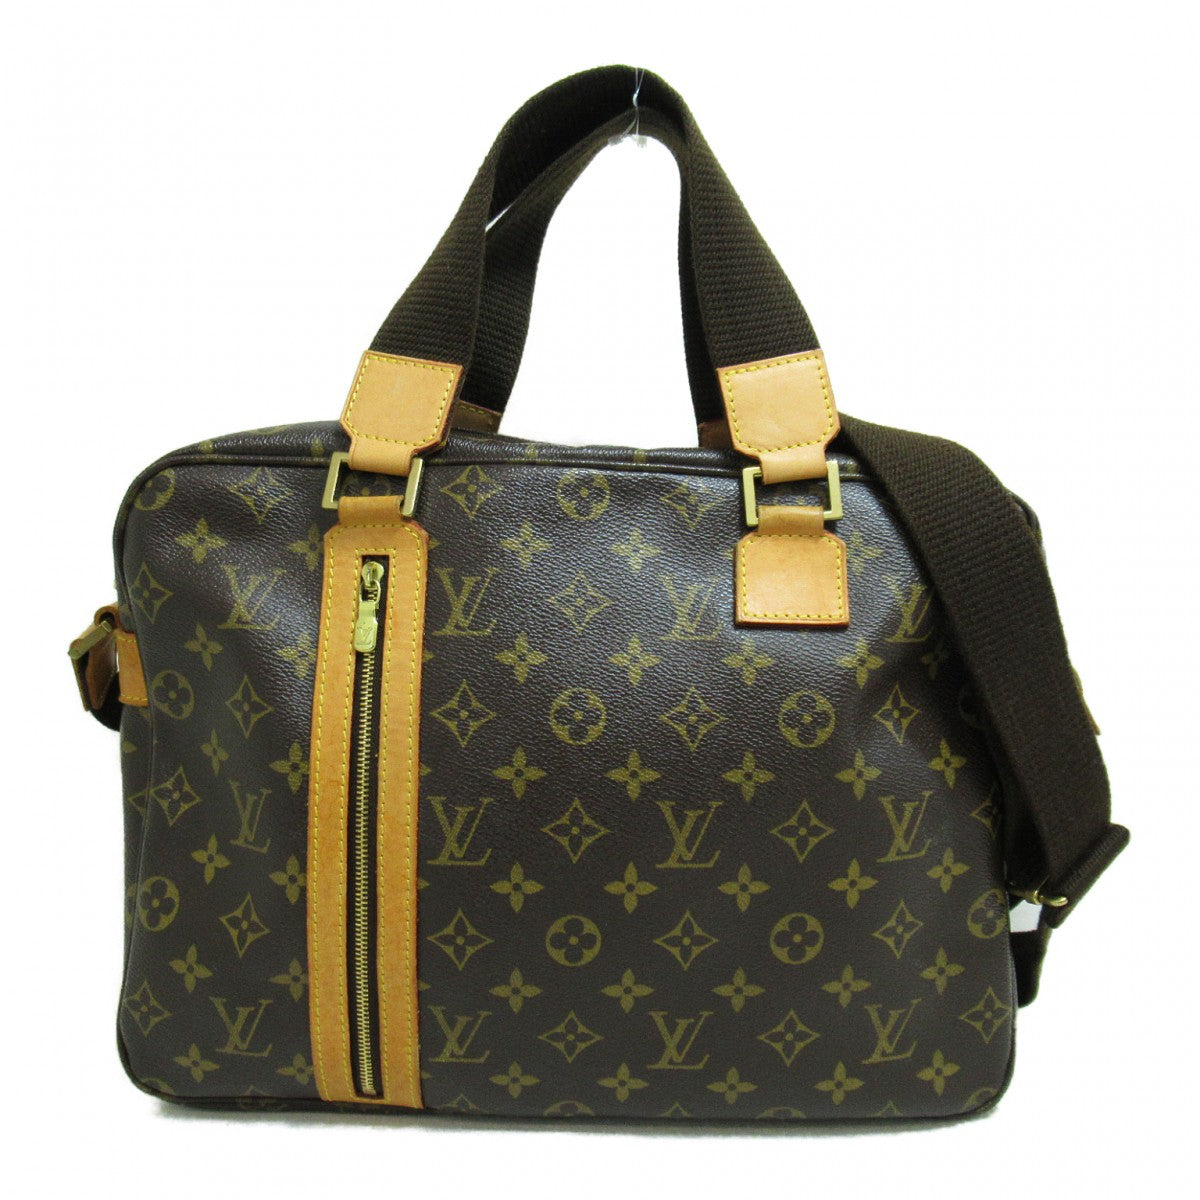 Louis Vuitton Monogram Sac Bosphore Canvas Business Bag M40043 in Excellent condition